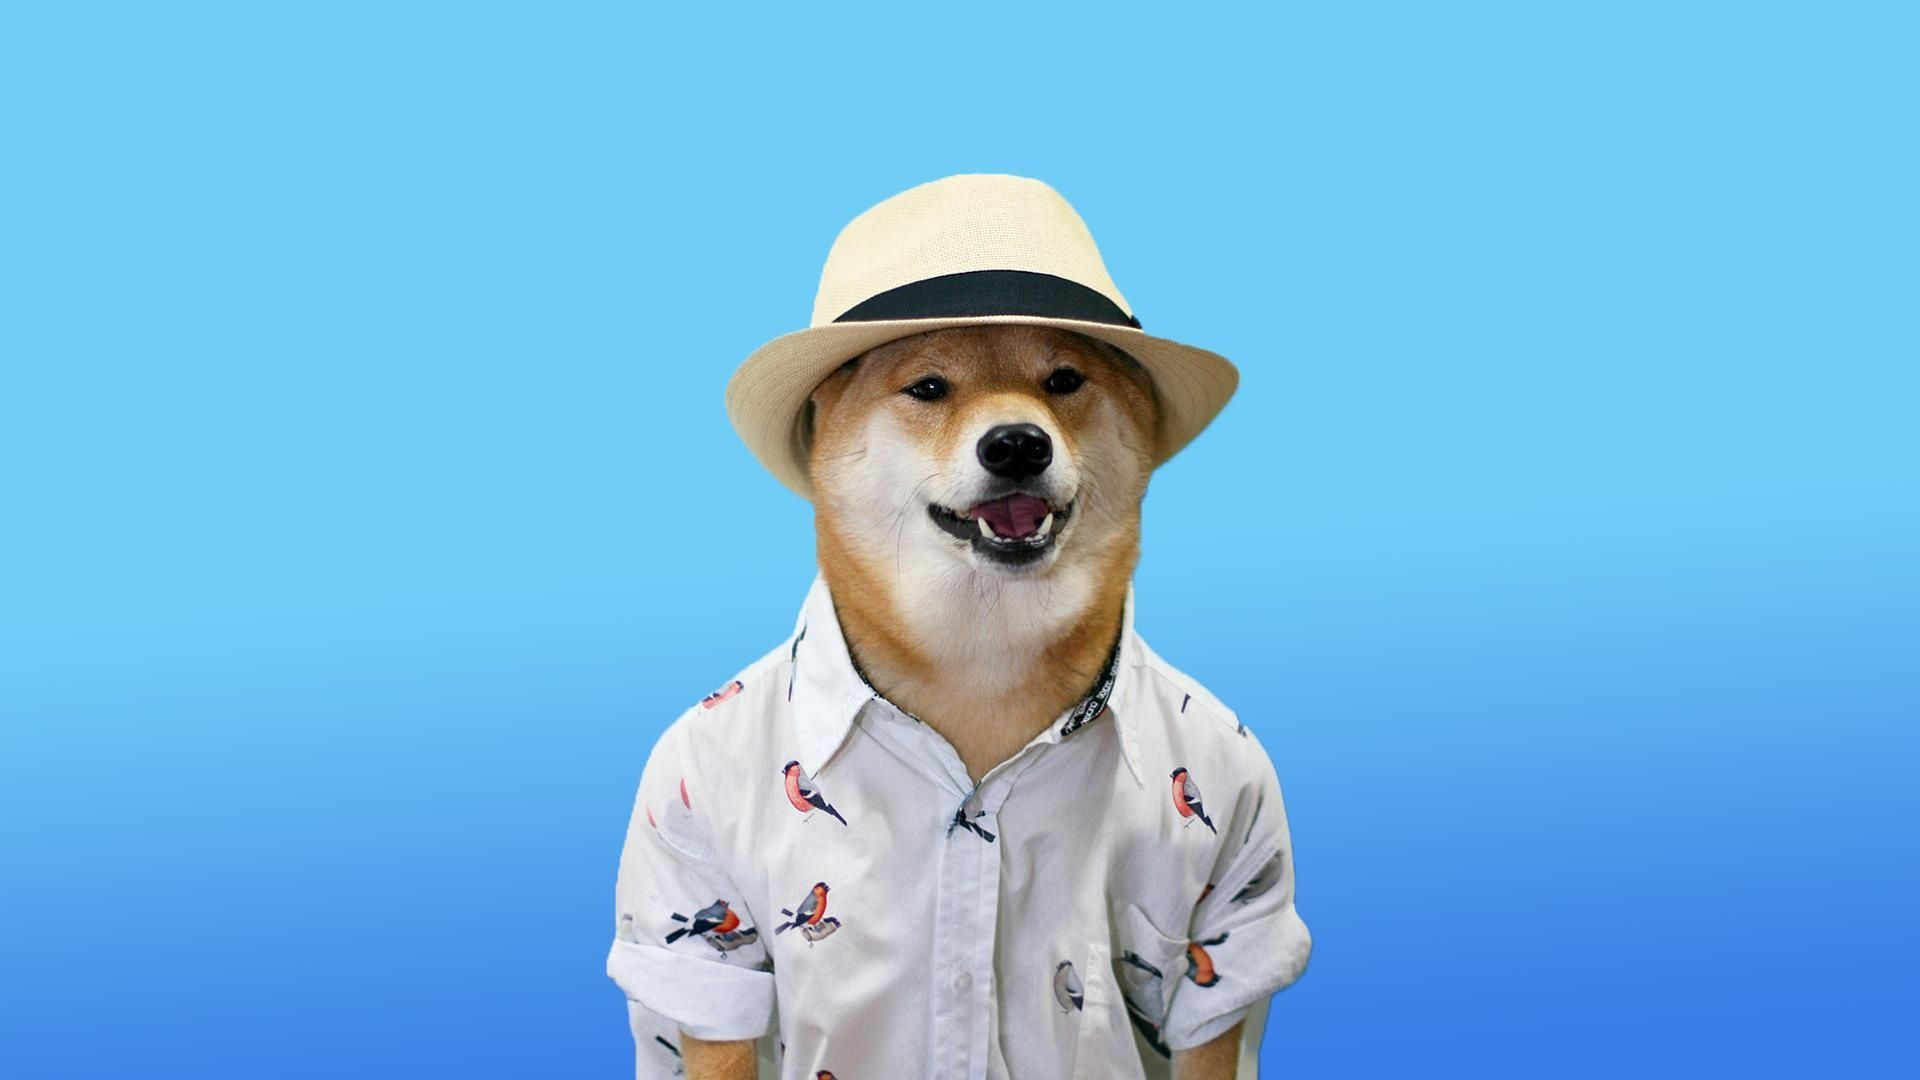 Dog Meme Pictures  Download Free Images on Unsplash